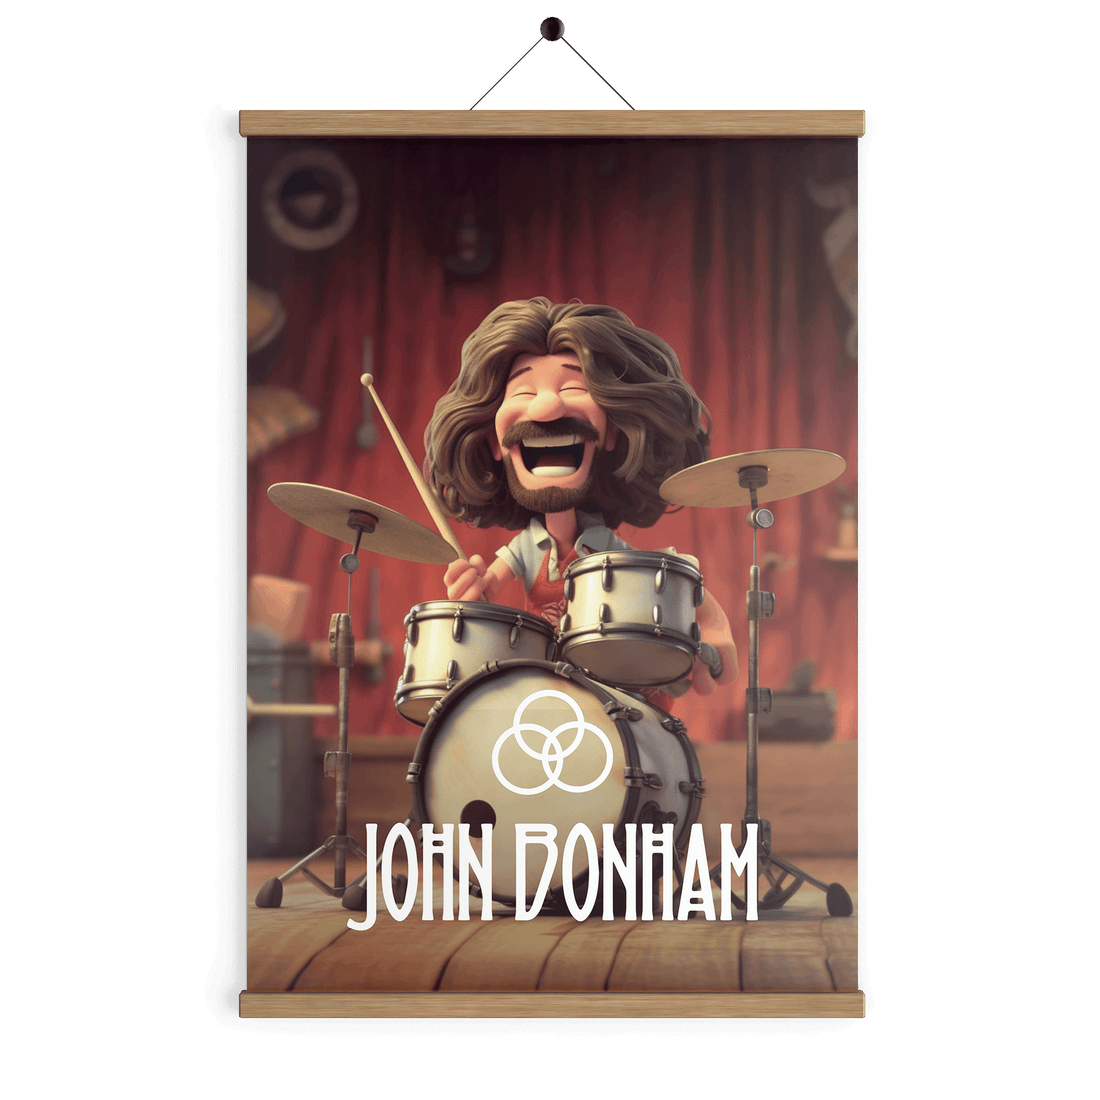 John Bonham